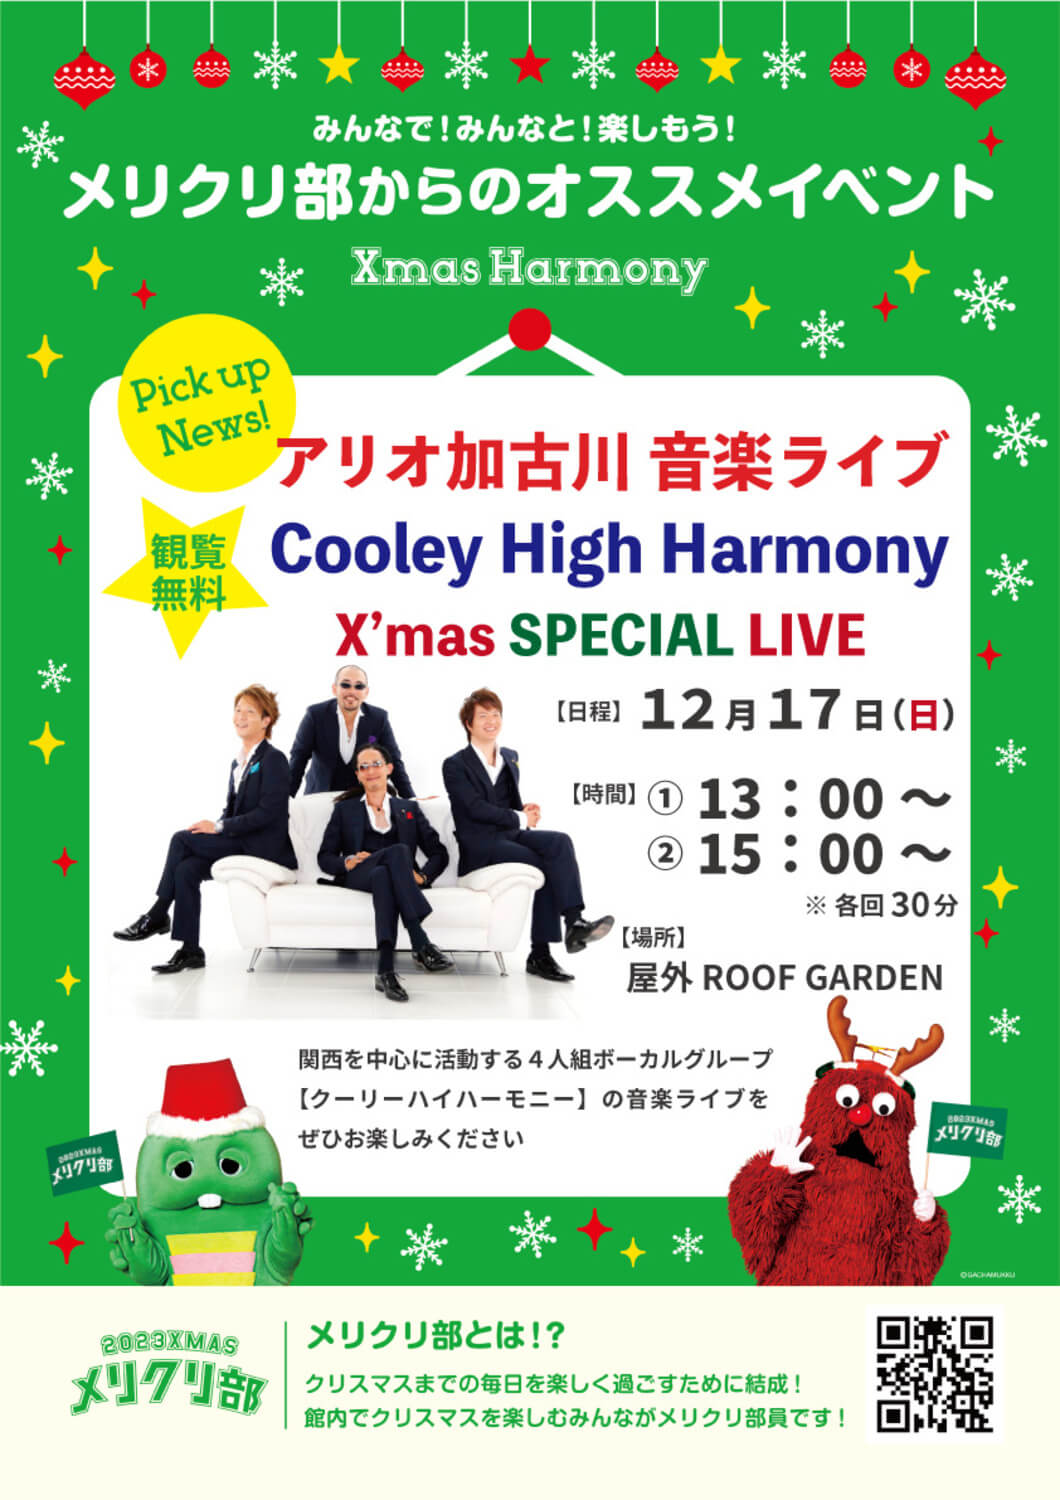 アリオ加古川音楽祭り【Cooley High Harmony】Xmas SPECIAL LIVEチラシ